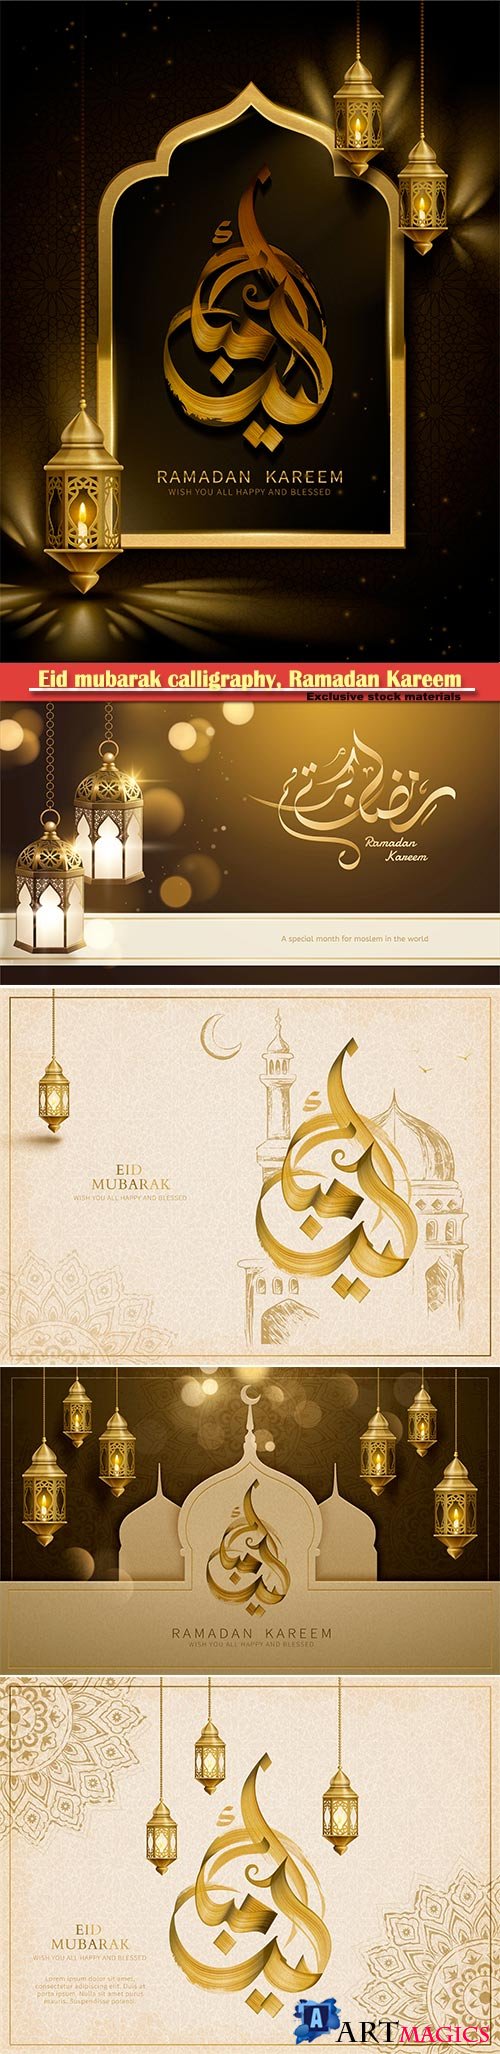 Eid mubarak calligraphy, Ramadan Kareem vector card # 7